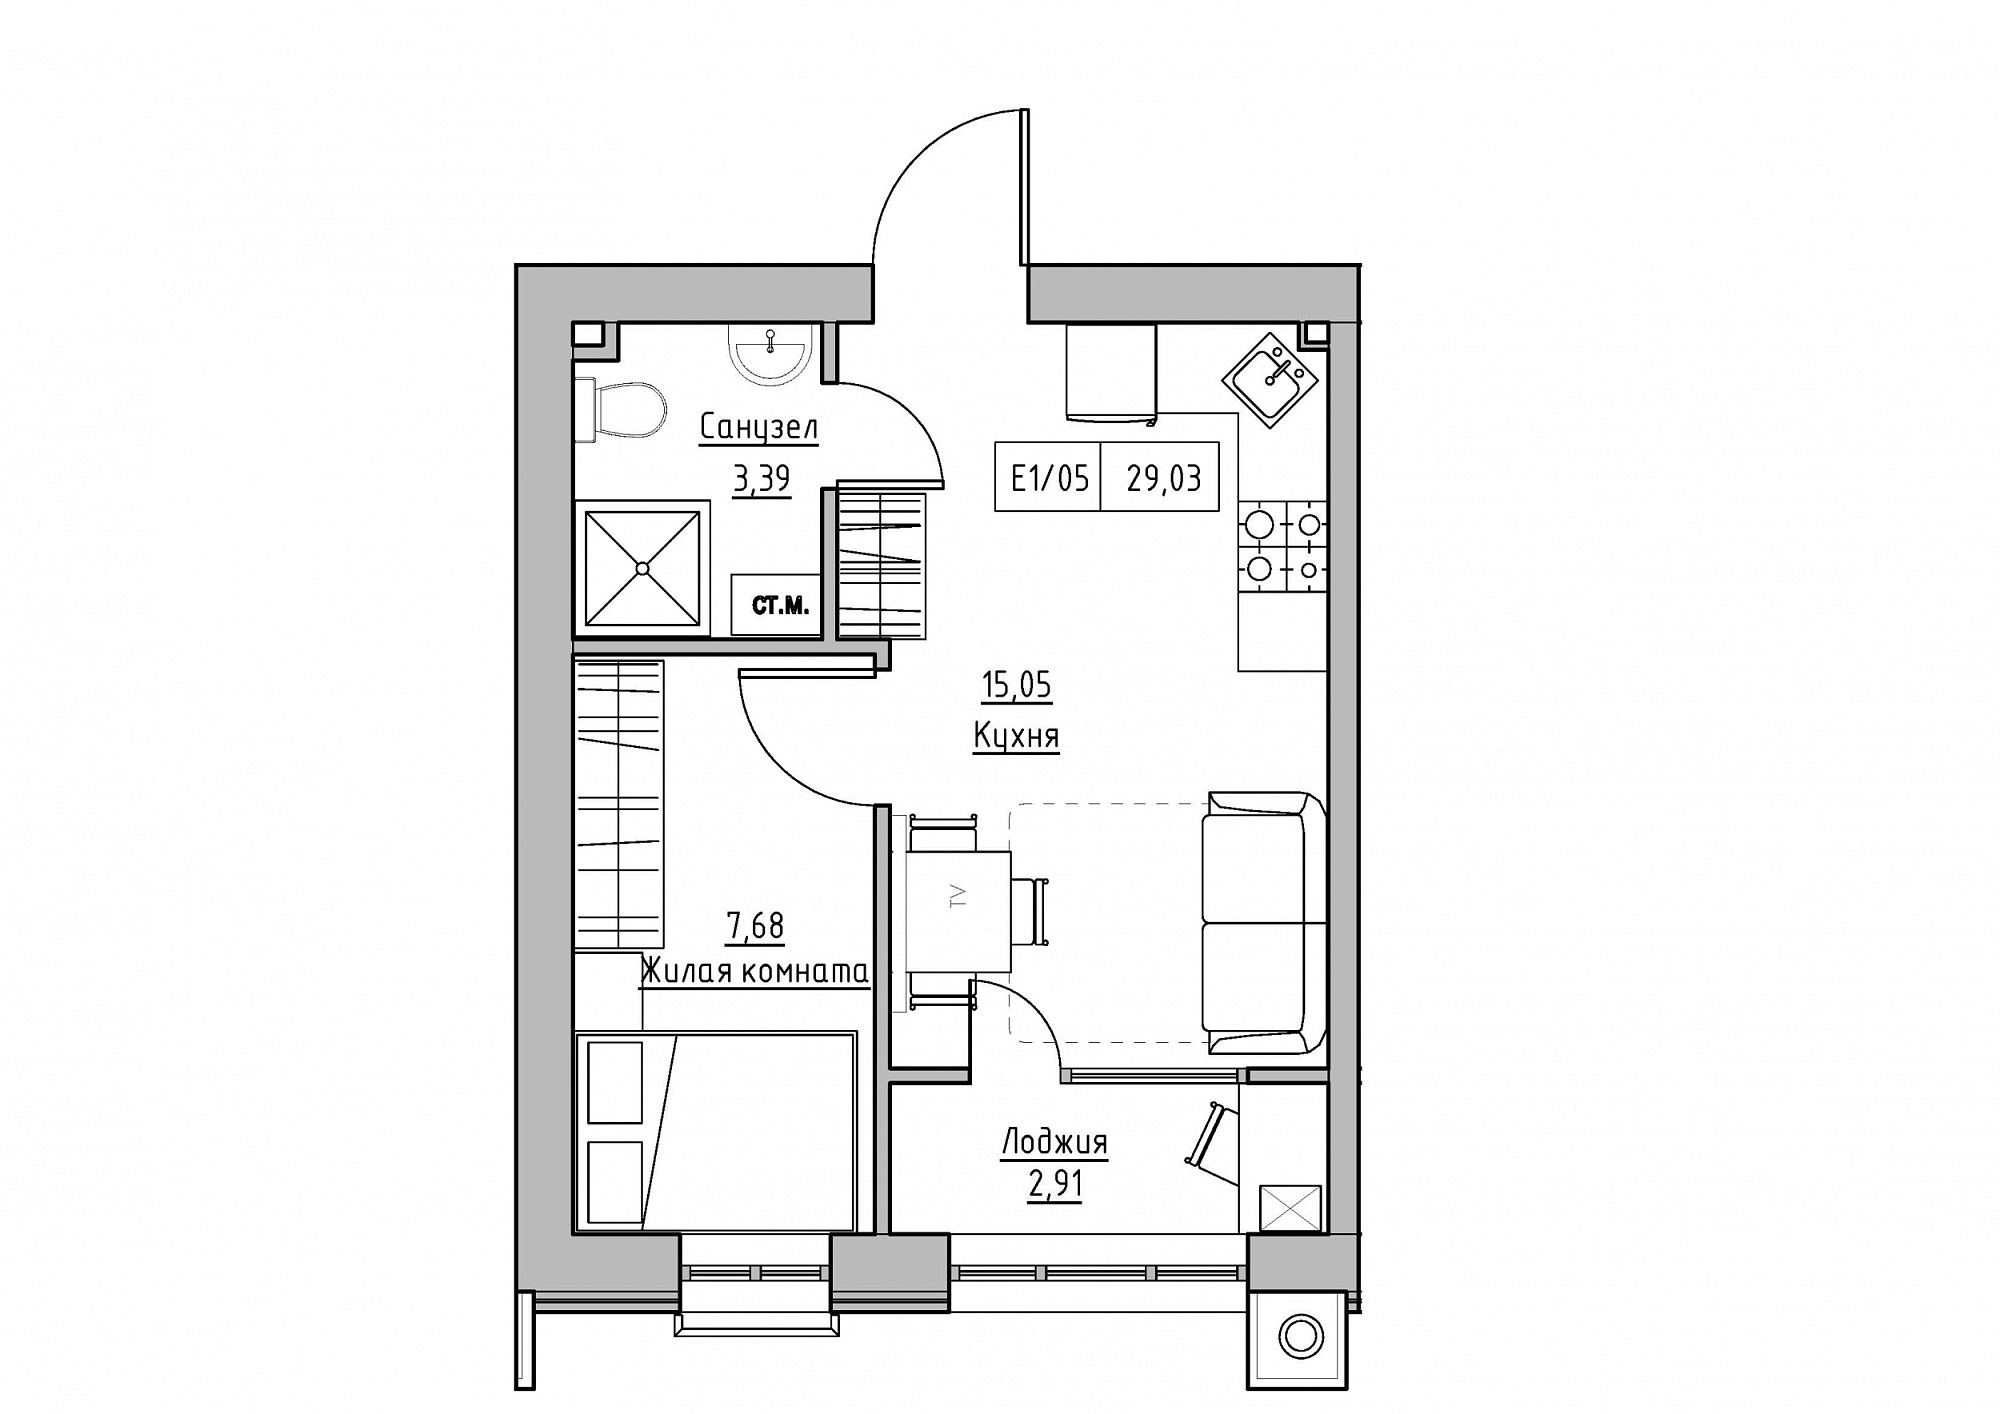 Планування 1-к квартира площею 29.03м2, KS-012-03/0007.